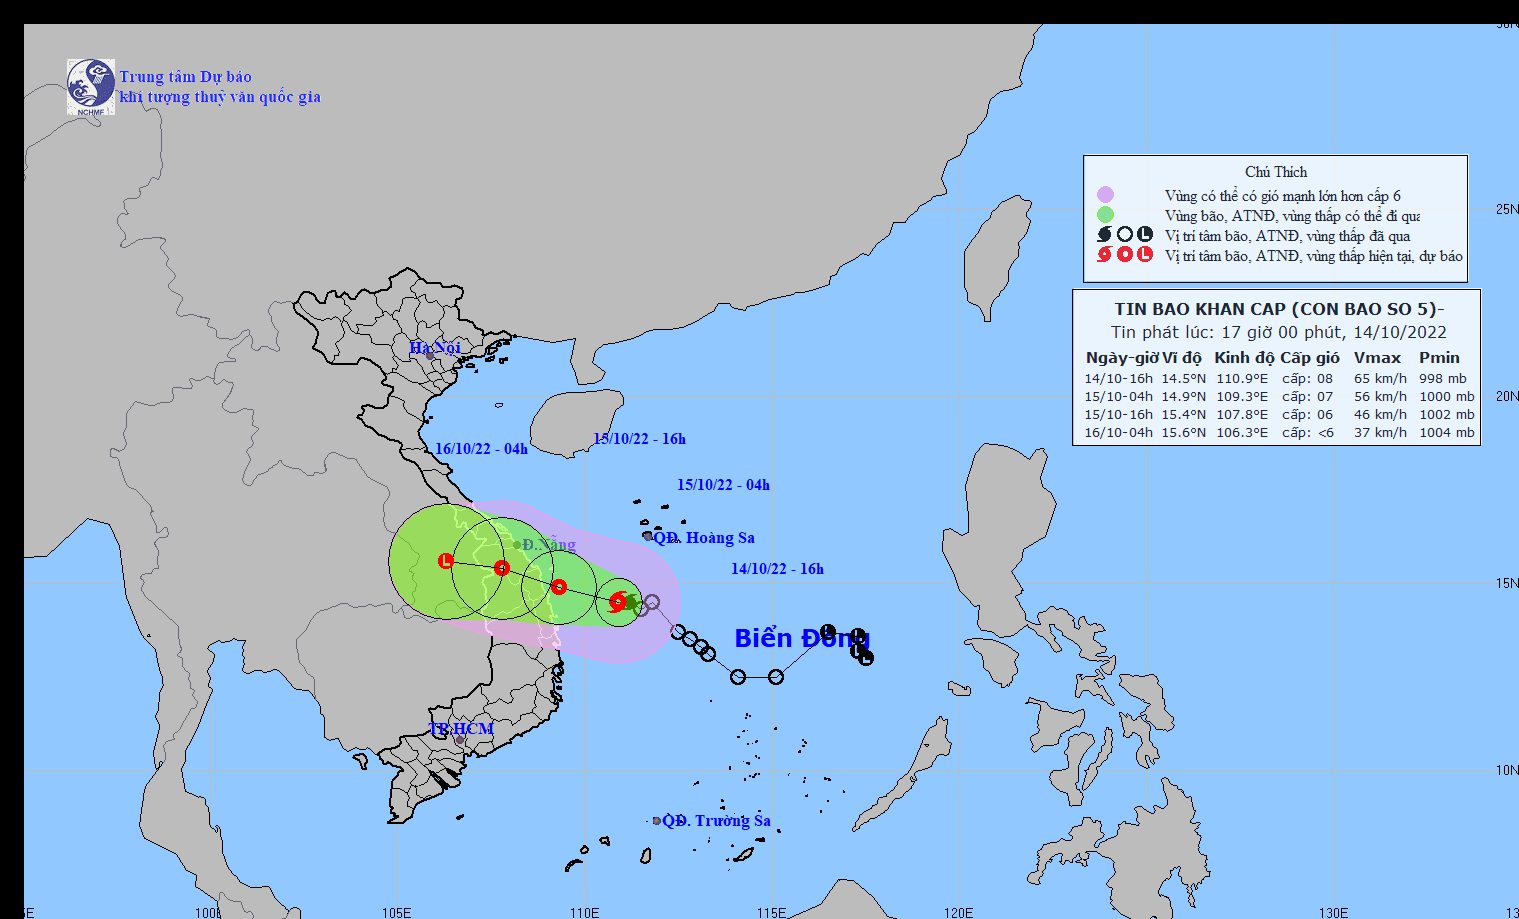 Tình hình diễn biến mưa lũ trên địa bàn tỉnh Thừa Thiên Huế luôn được cập nhật liên tục. Để nắm rõ tình hình, cùng click vào hình ảnh liên quan để cập nhật những thông tin mới nhất về mưa lũ tại đây.